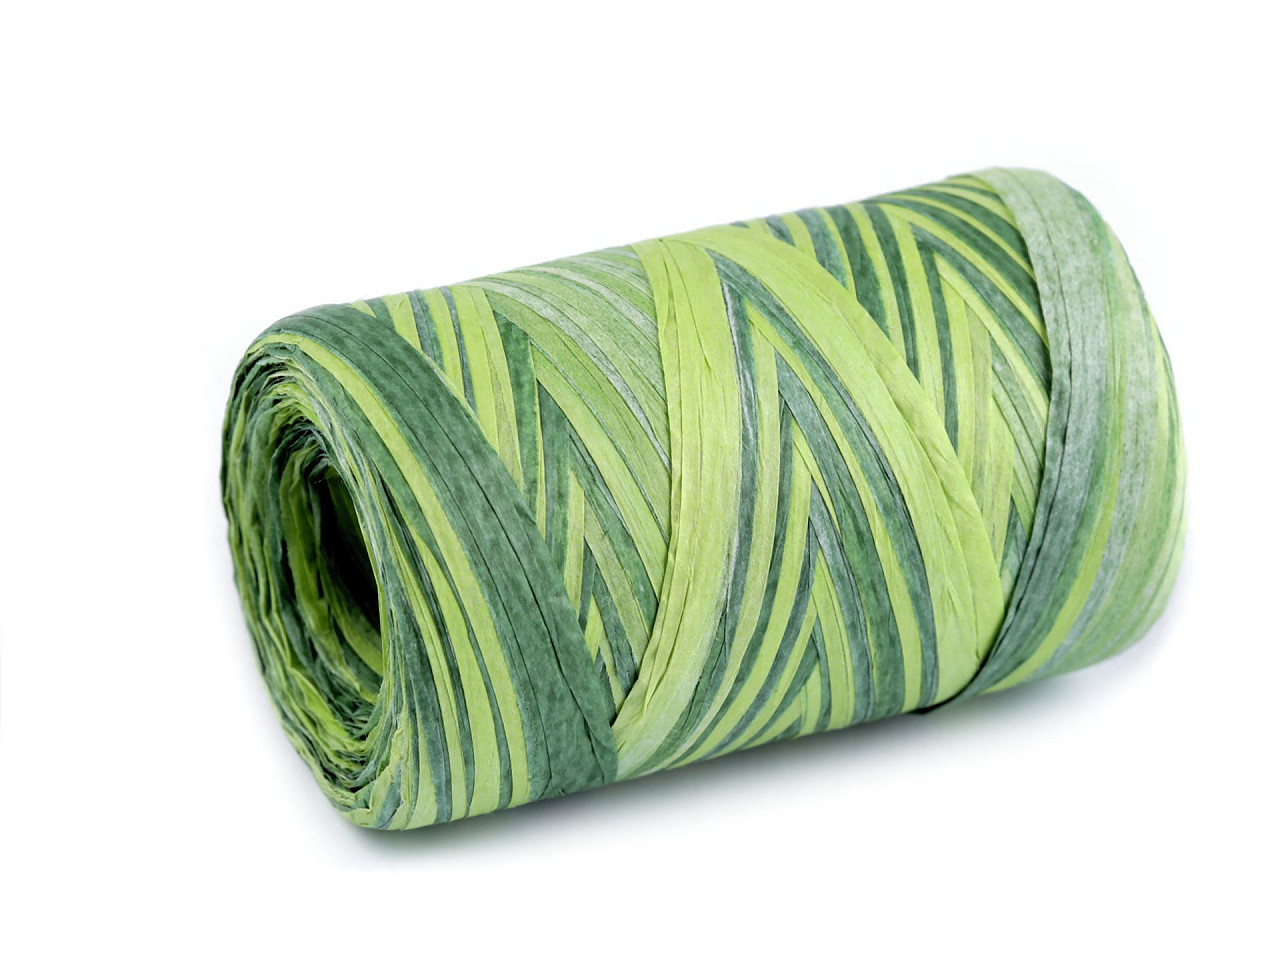 Lýko rafie k pletení tašek multicolor, šíře 5-8 mm, barva 3 zelená sv.